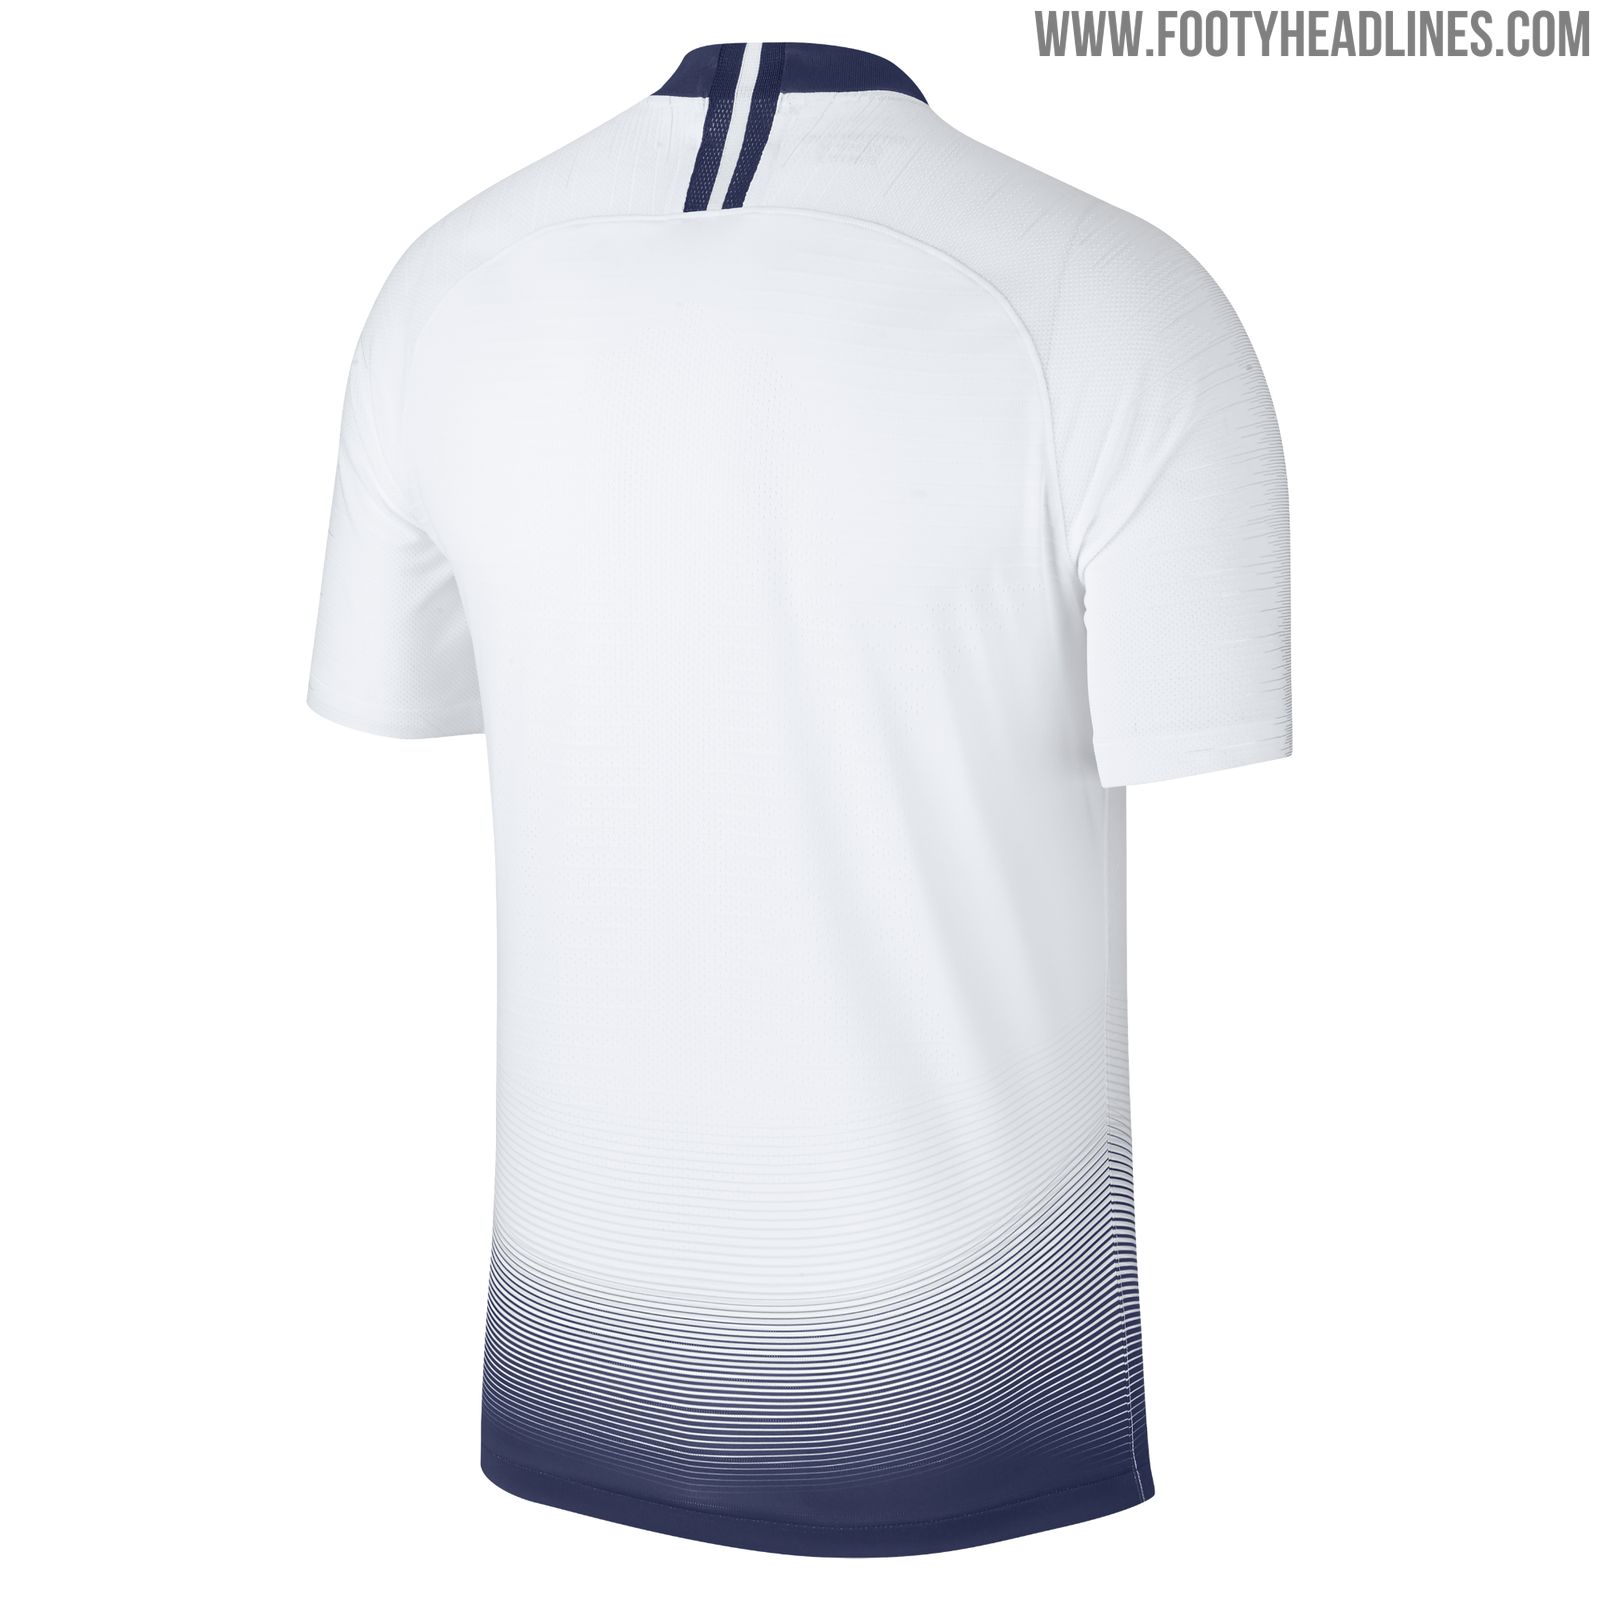 Nike Tottenham Hotspur 18-19 Training Kit Released - Footy Headlines